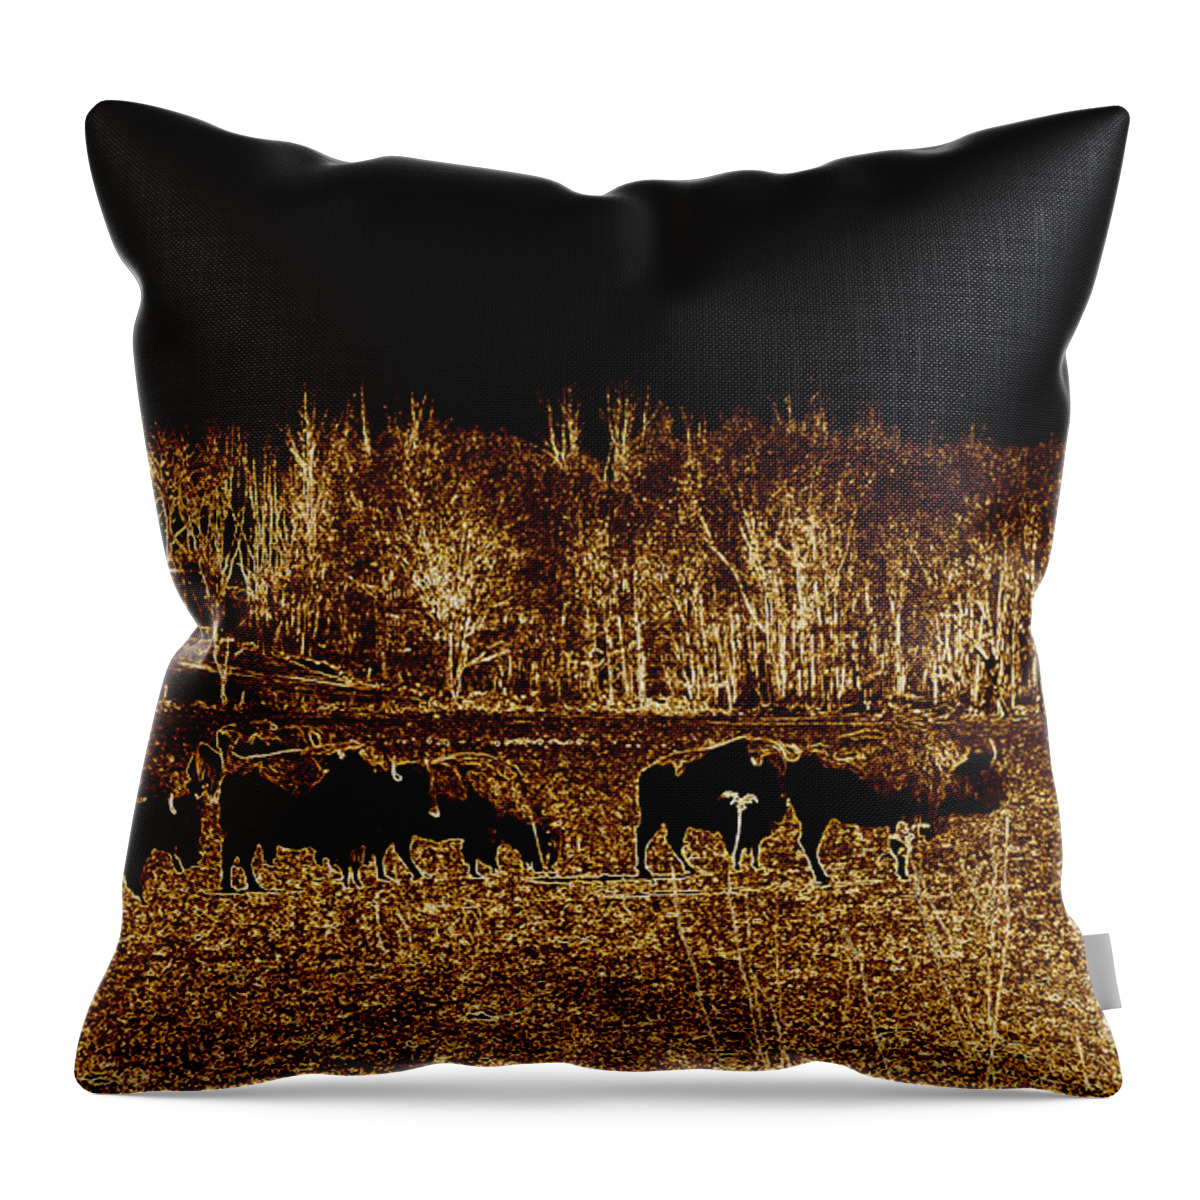 Buffalo Throw Pillow featuring the photograph Buffalos roaming by Kim Galluzzo